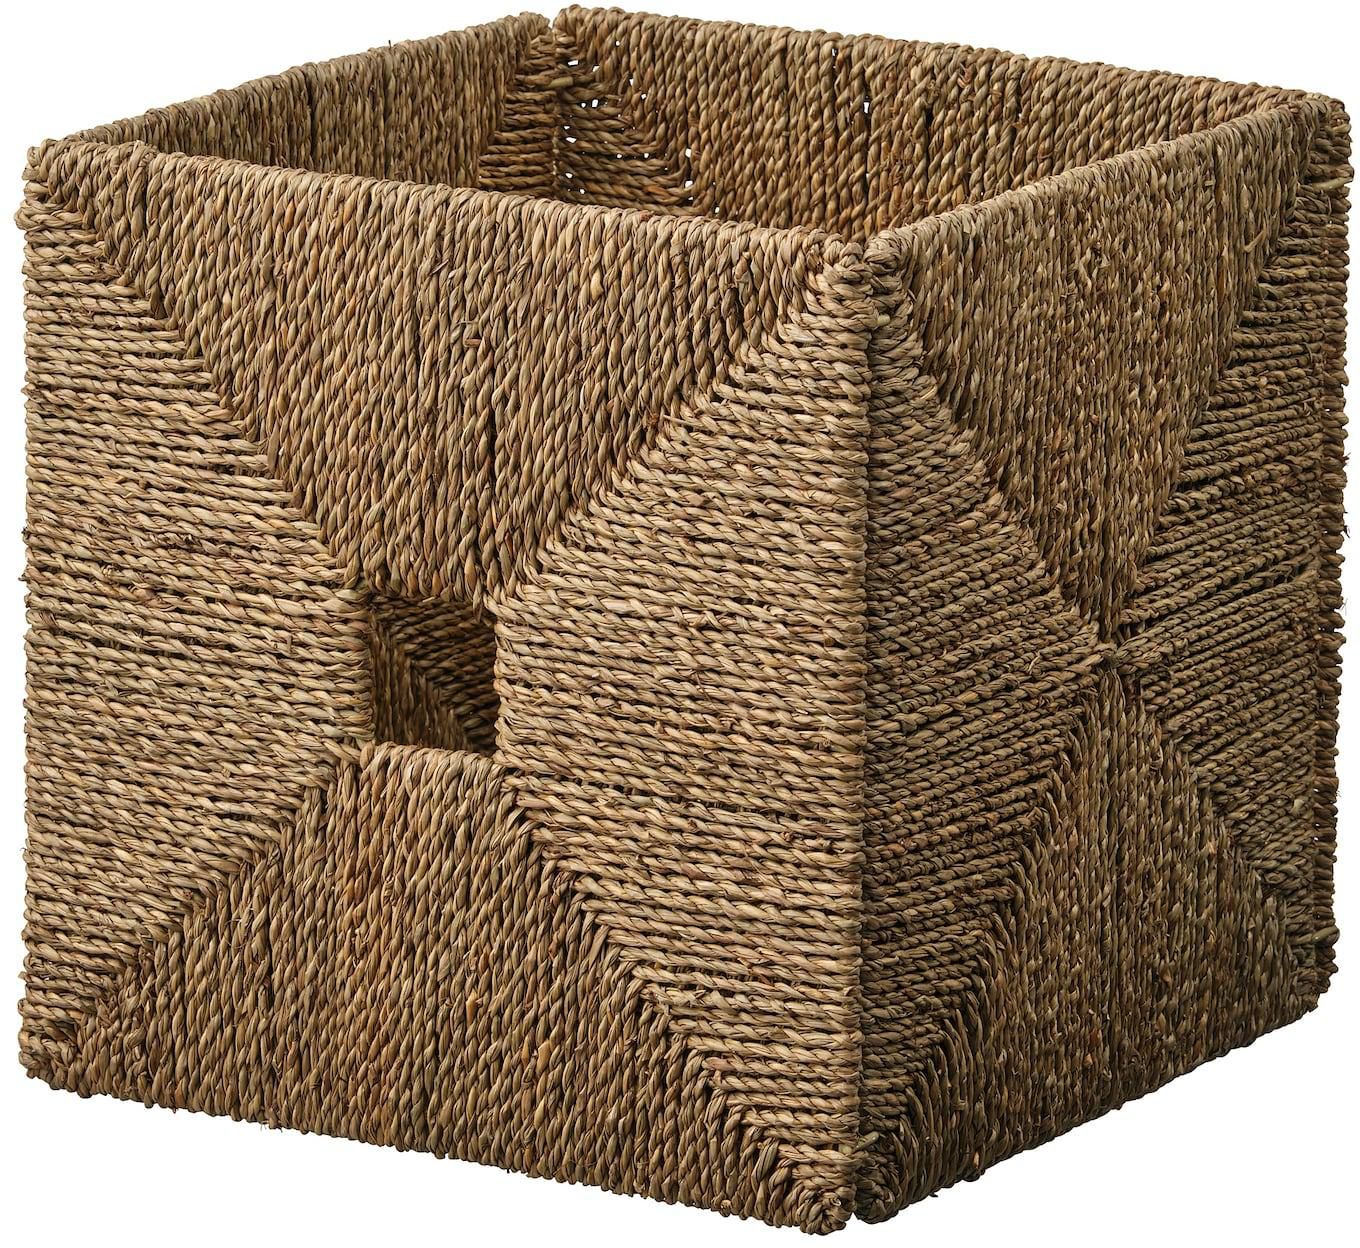 KNIPSA Basket - seagrass 32x33x32 cm